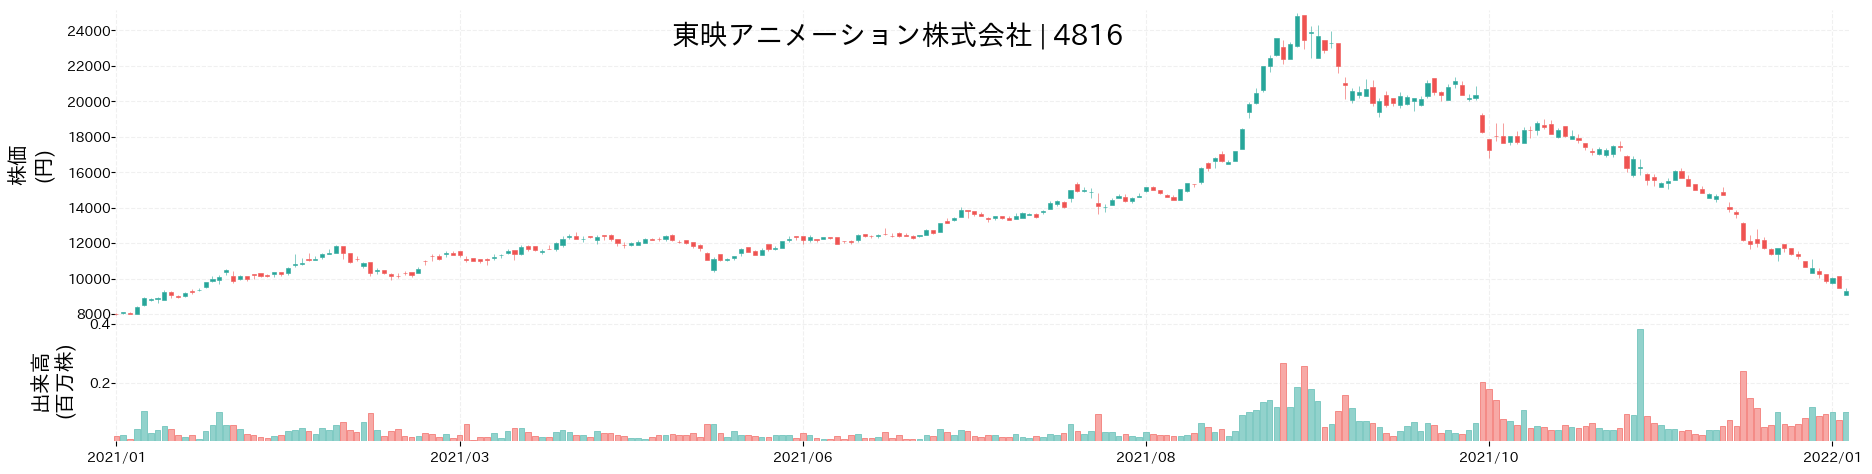 東映アニメーションの株価推移(2021)